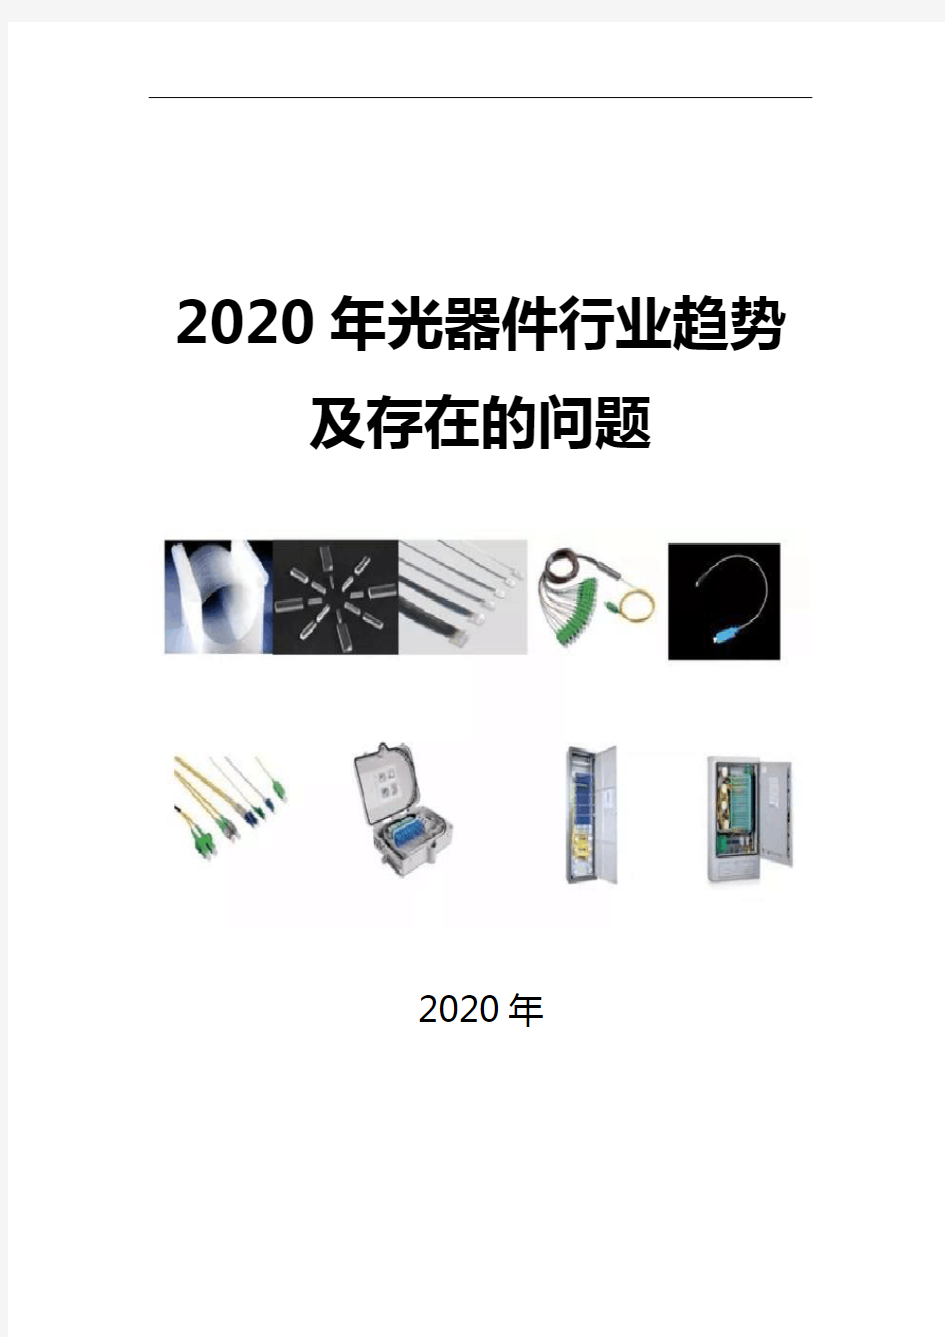 2020光器件行业趋势及存在的问题